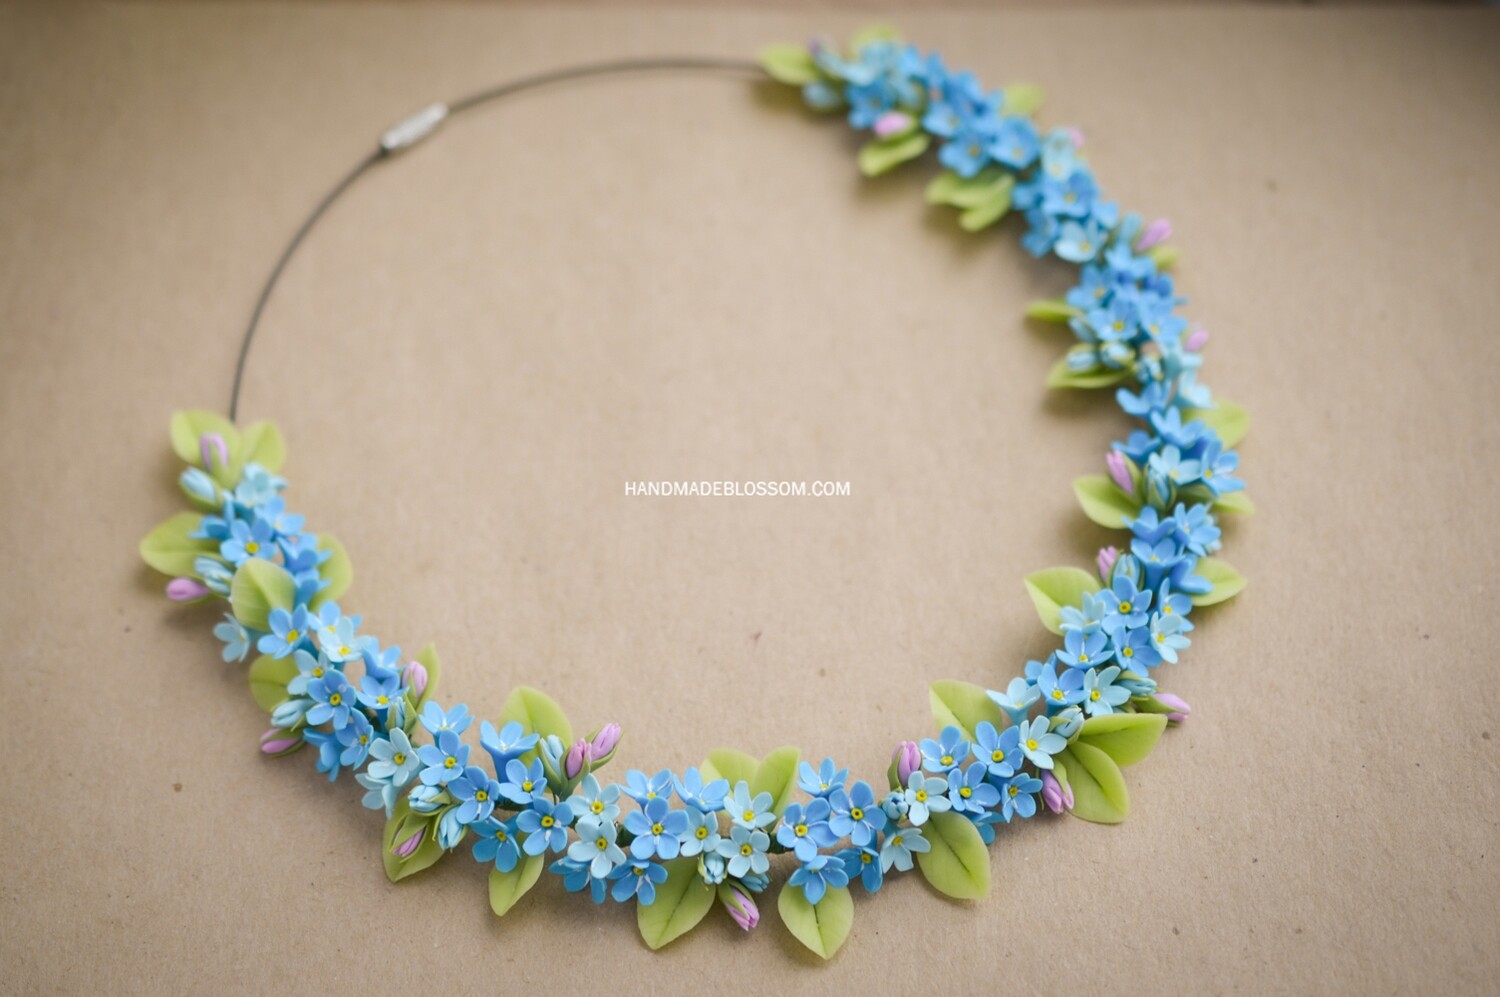 Forget me not necklace, myosotis necklace, Blue flowers